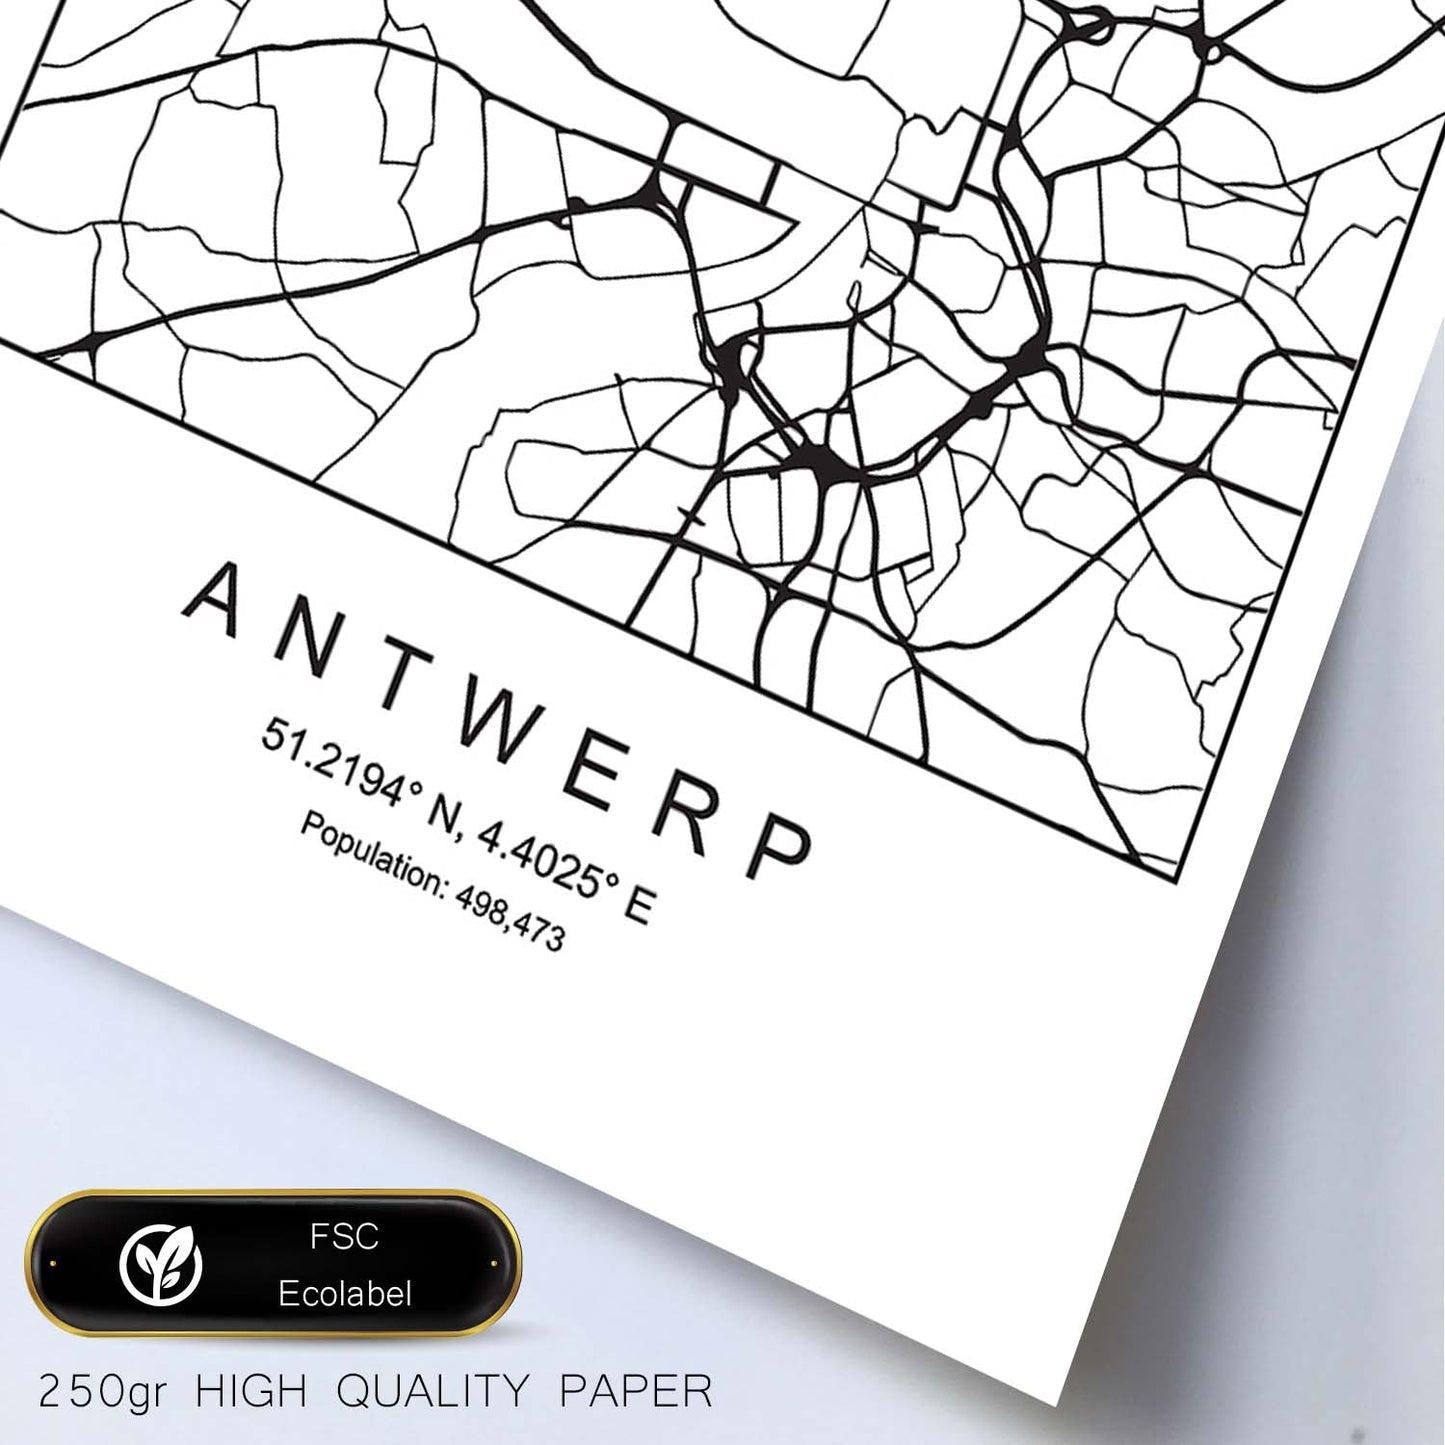 Lámina mapa de la ciudad Antwerp estilo nordico en blanco y negro.-Artwork-Nacnic-Nacnic Estudio SL